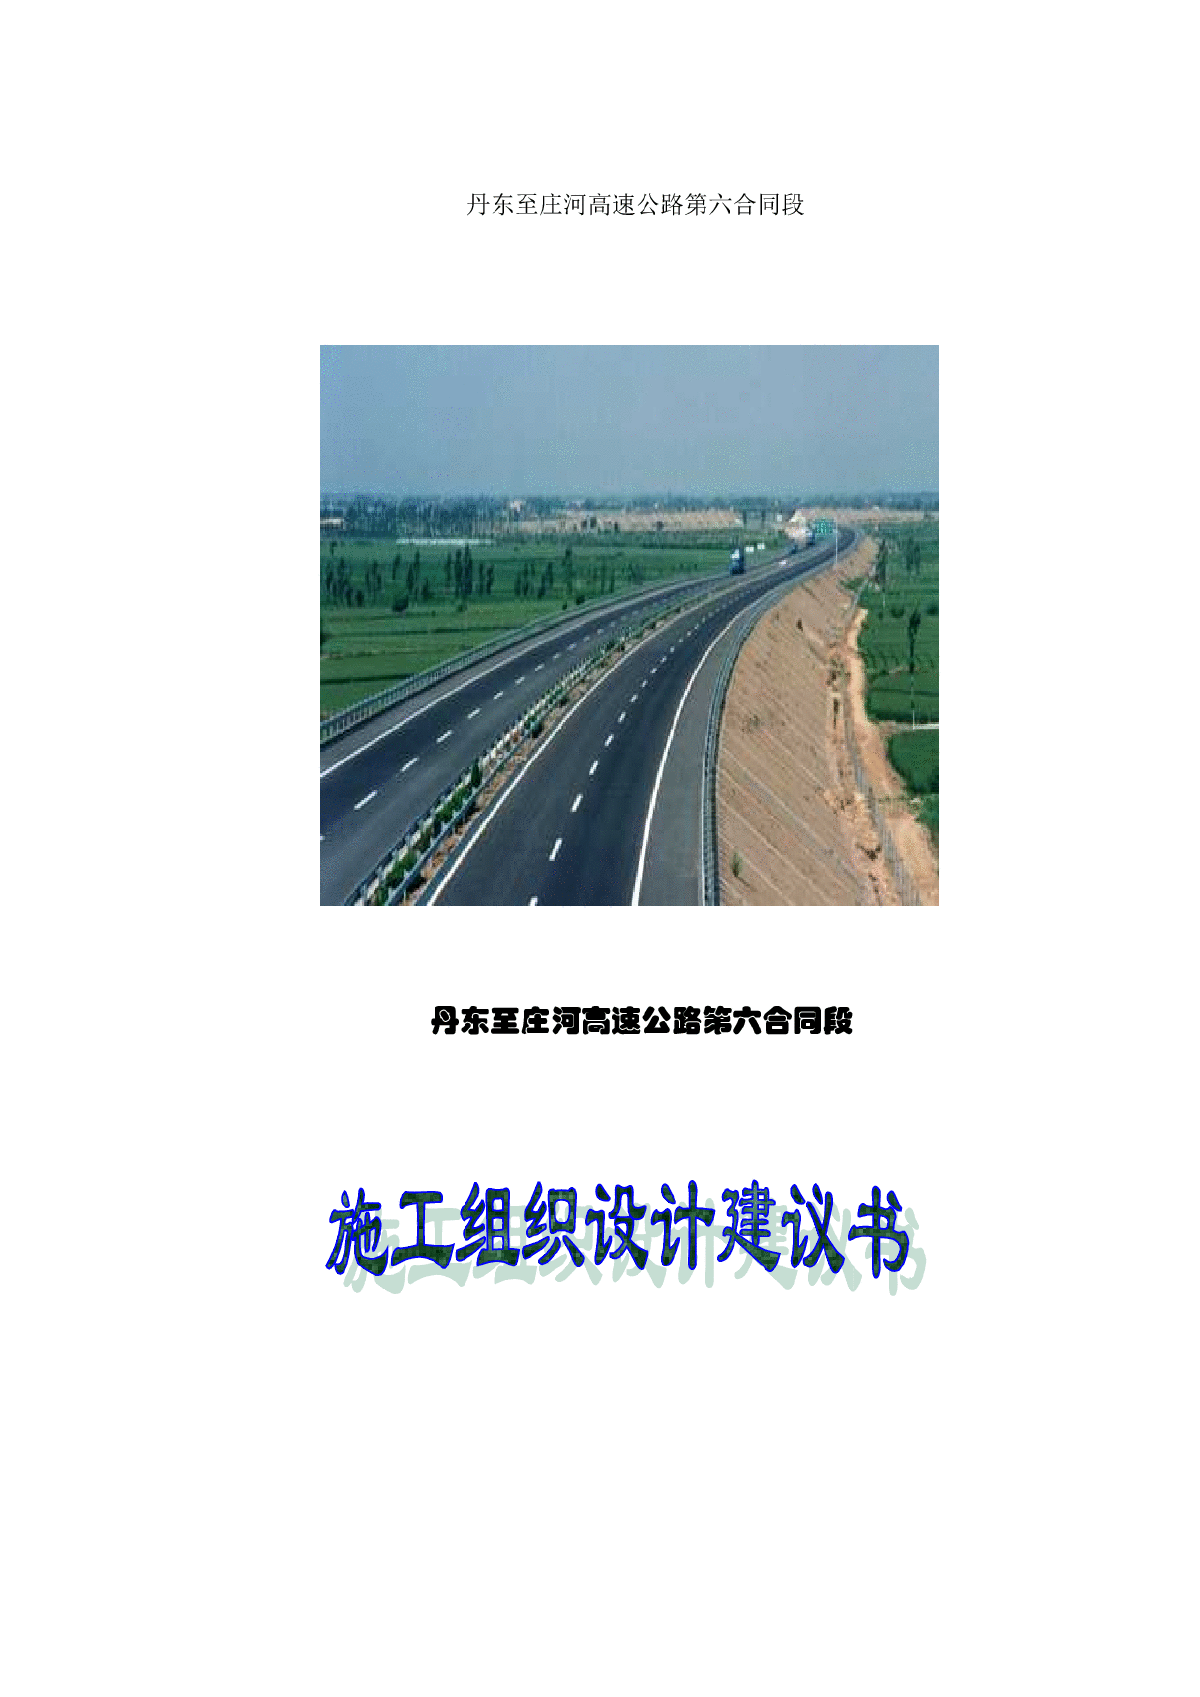 丹东—阜新高速公路_百度百科